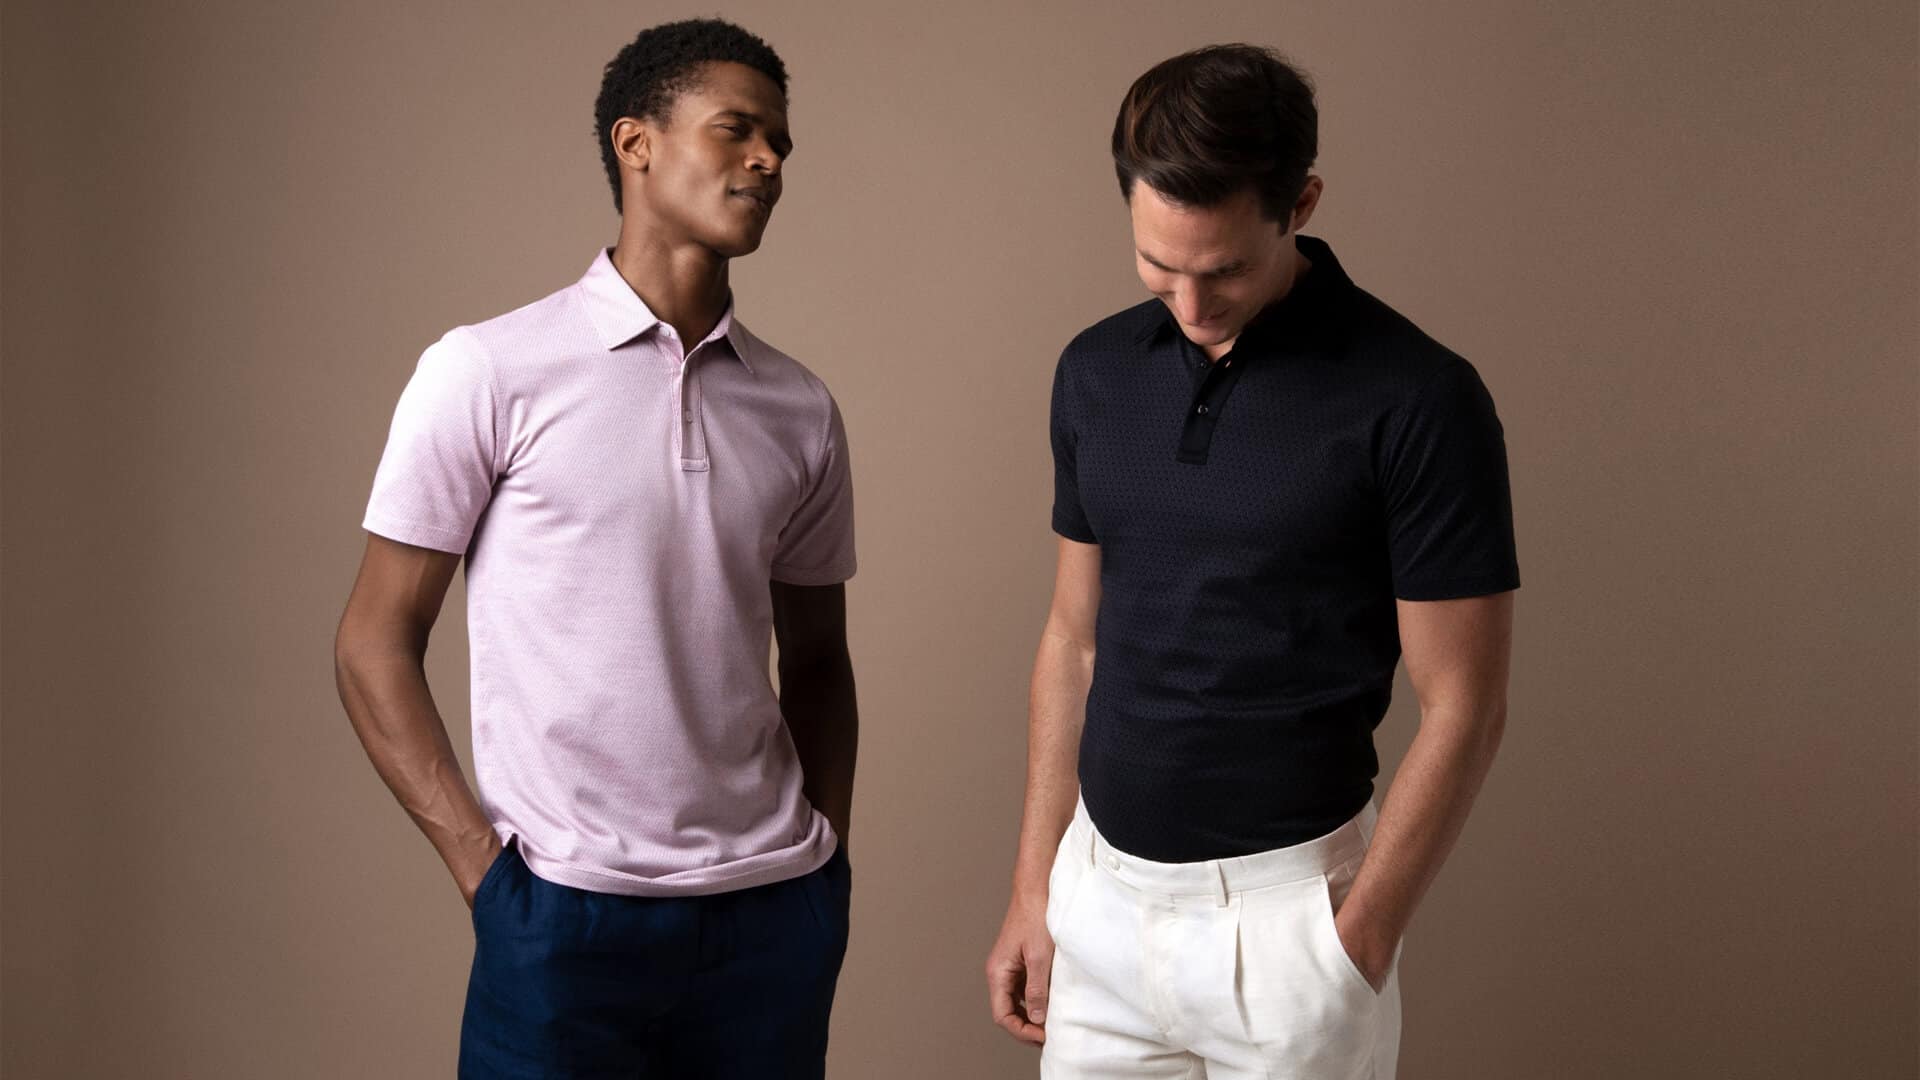 fashion essentials for men - polo shirts